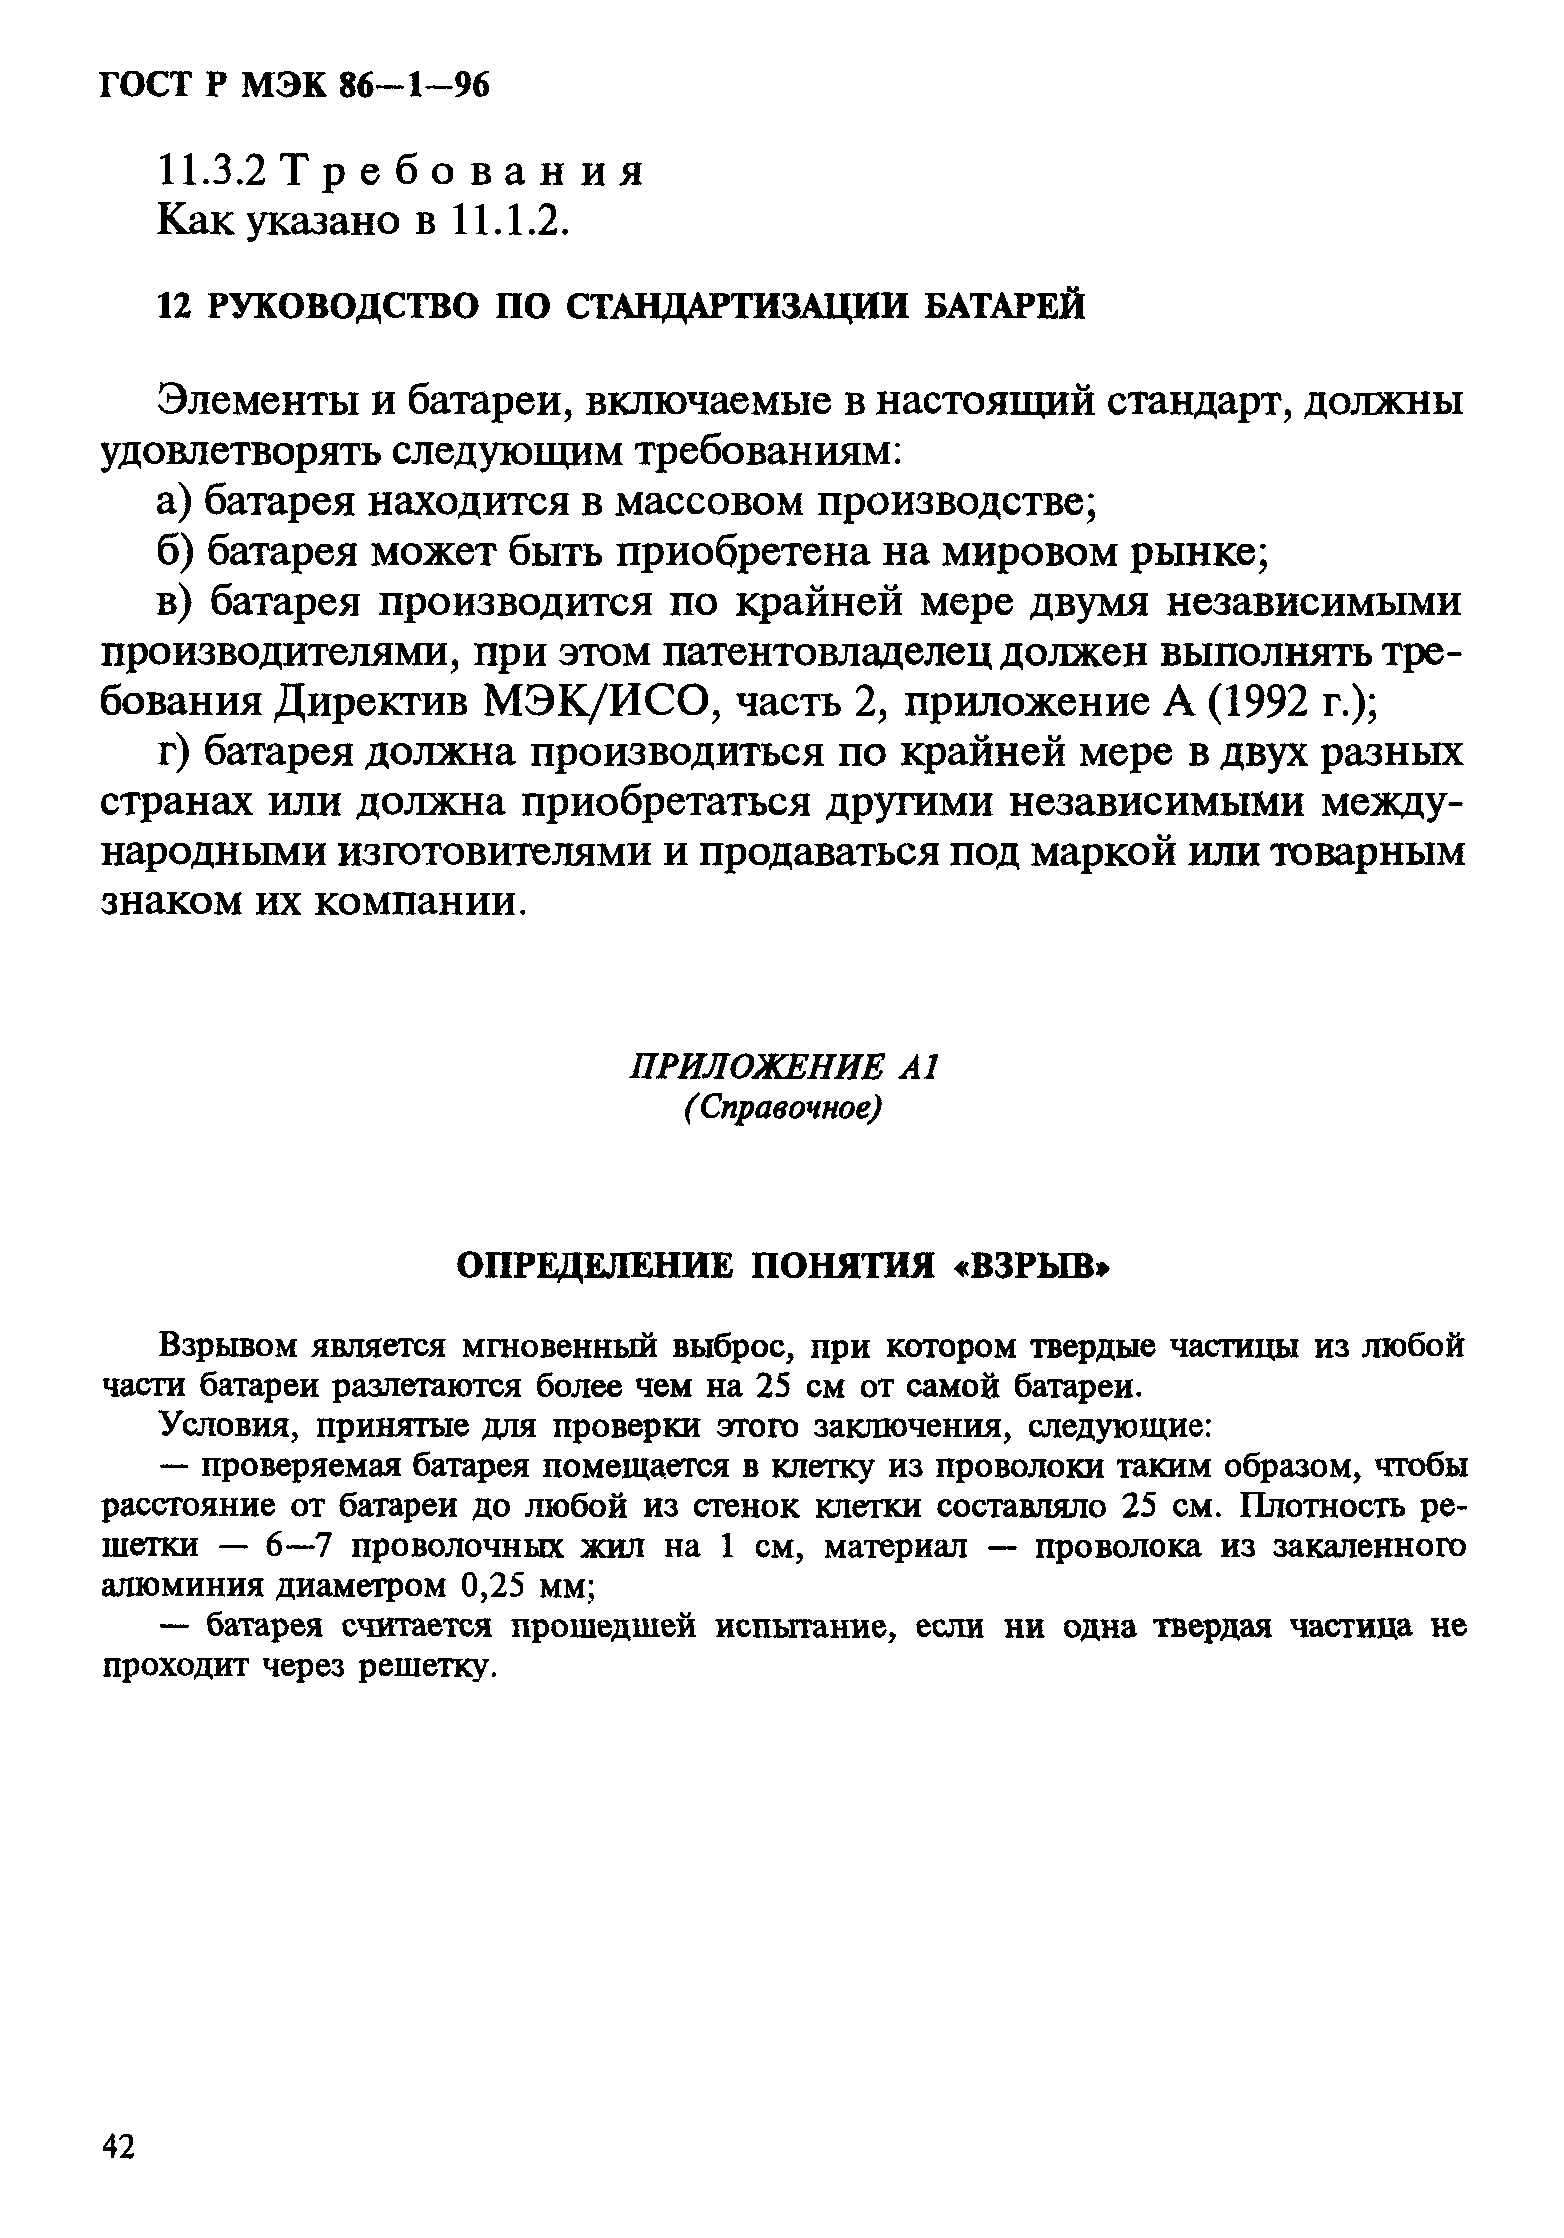 ГОСТ Р МЭК 86-1-96